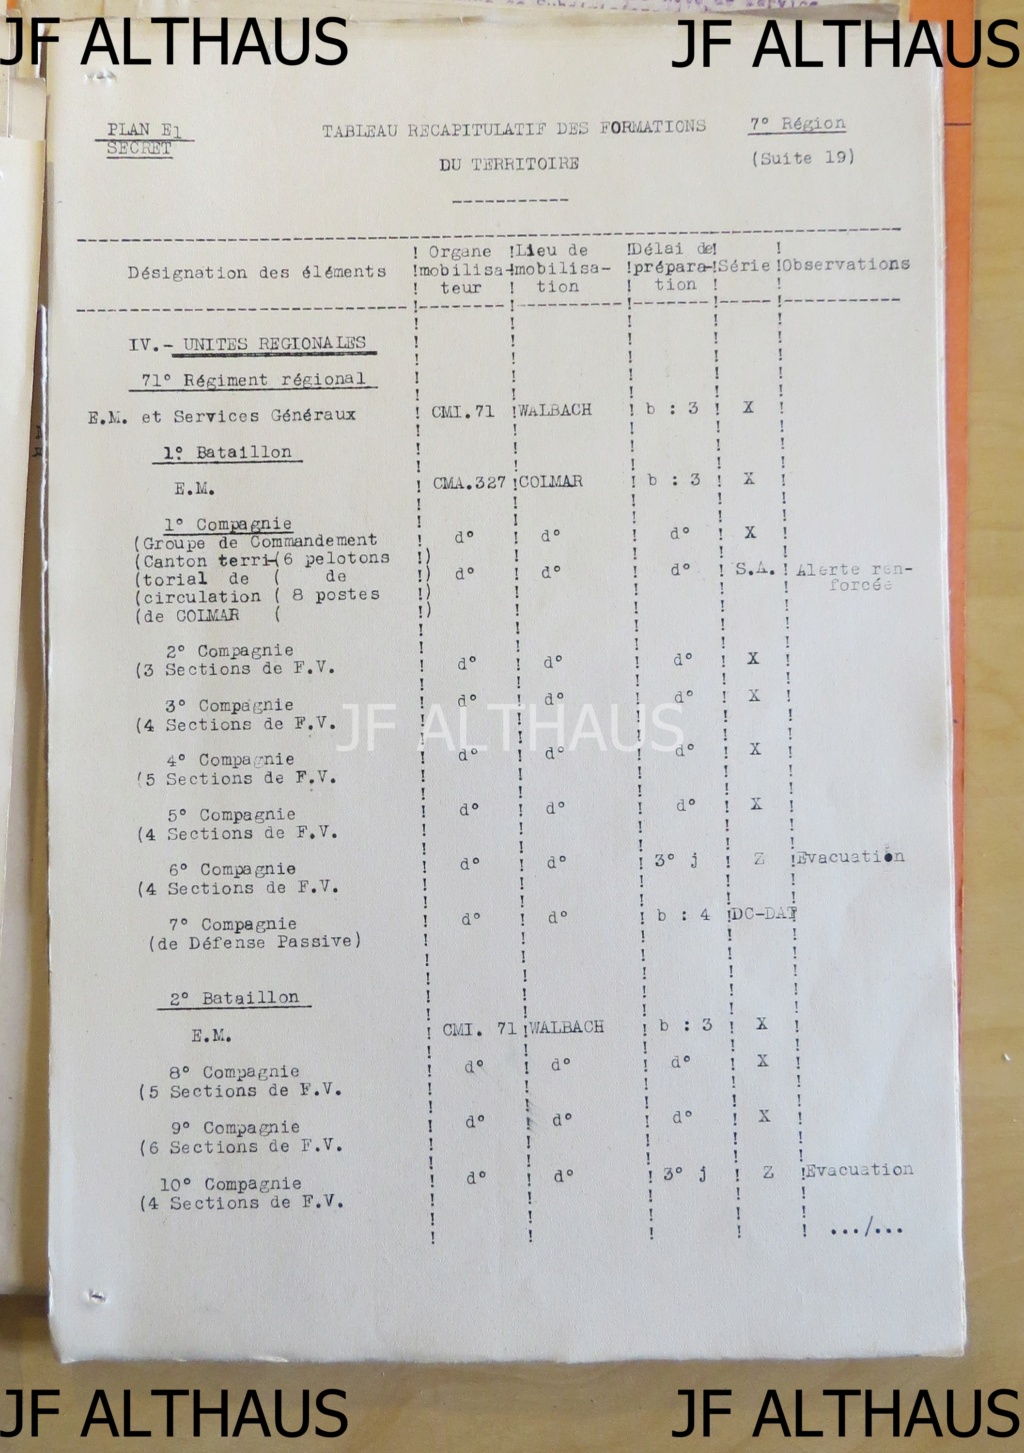 Les régiments régionaux de la 7e région militaire selon le plan E1 à jour en juillet 1939 Img_9922